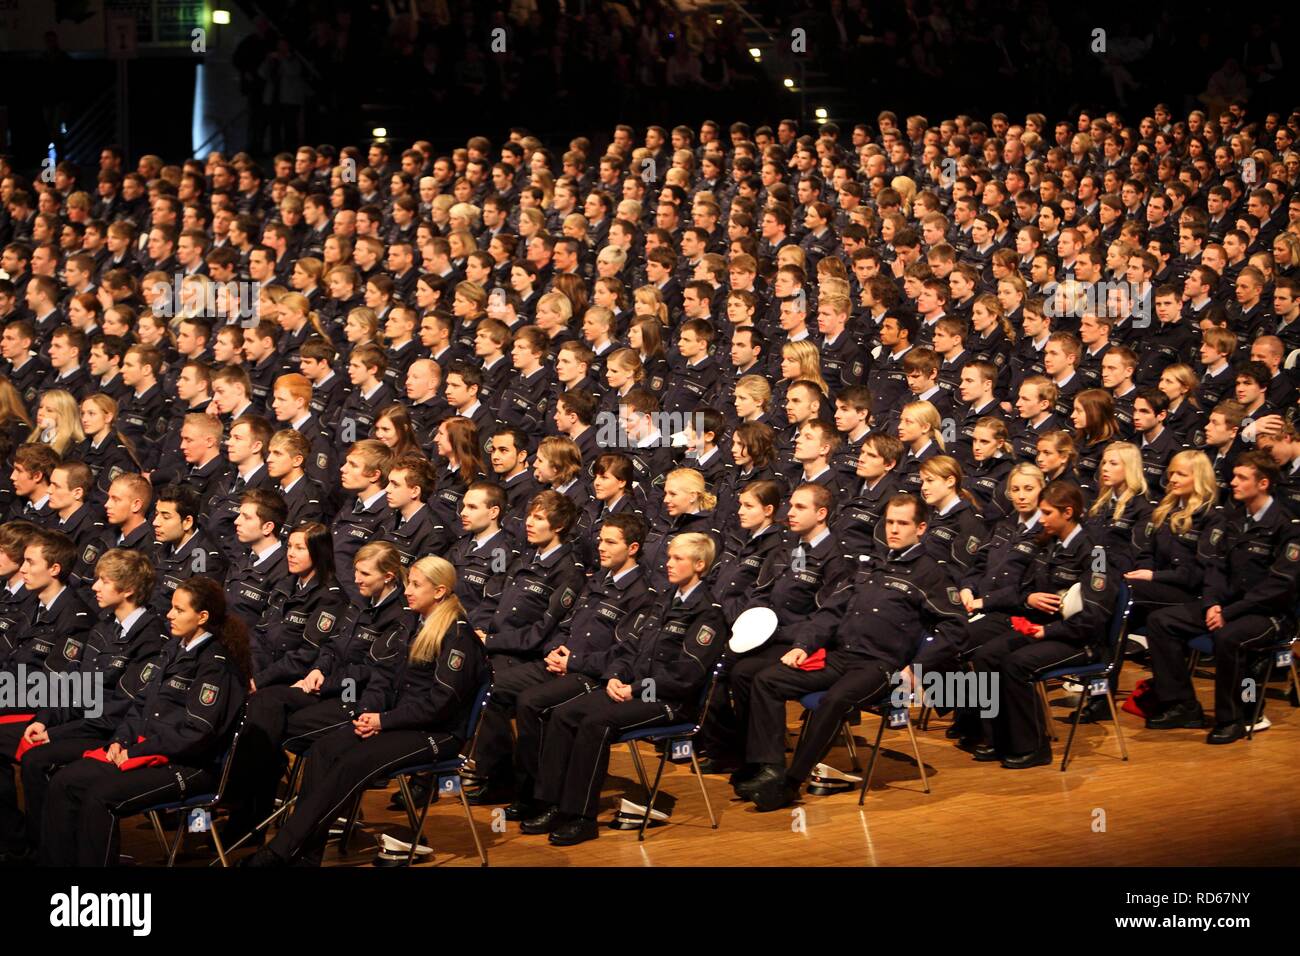 Vereidigung von 1100 Polizisten und Modenschau auf der NRW-Polizei, die Klasse von 2010, in der Grugahalle in Essen. Stockfoto